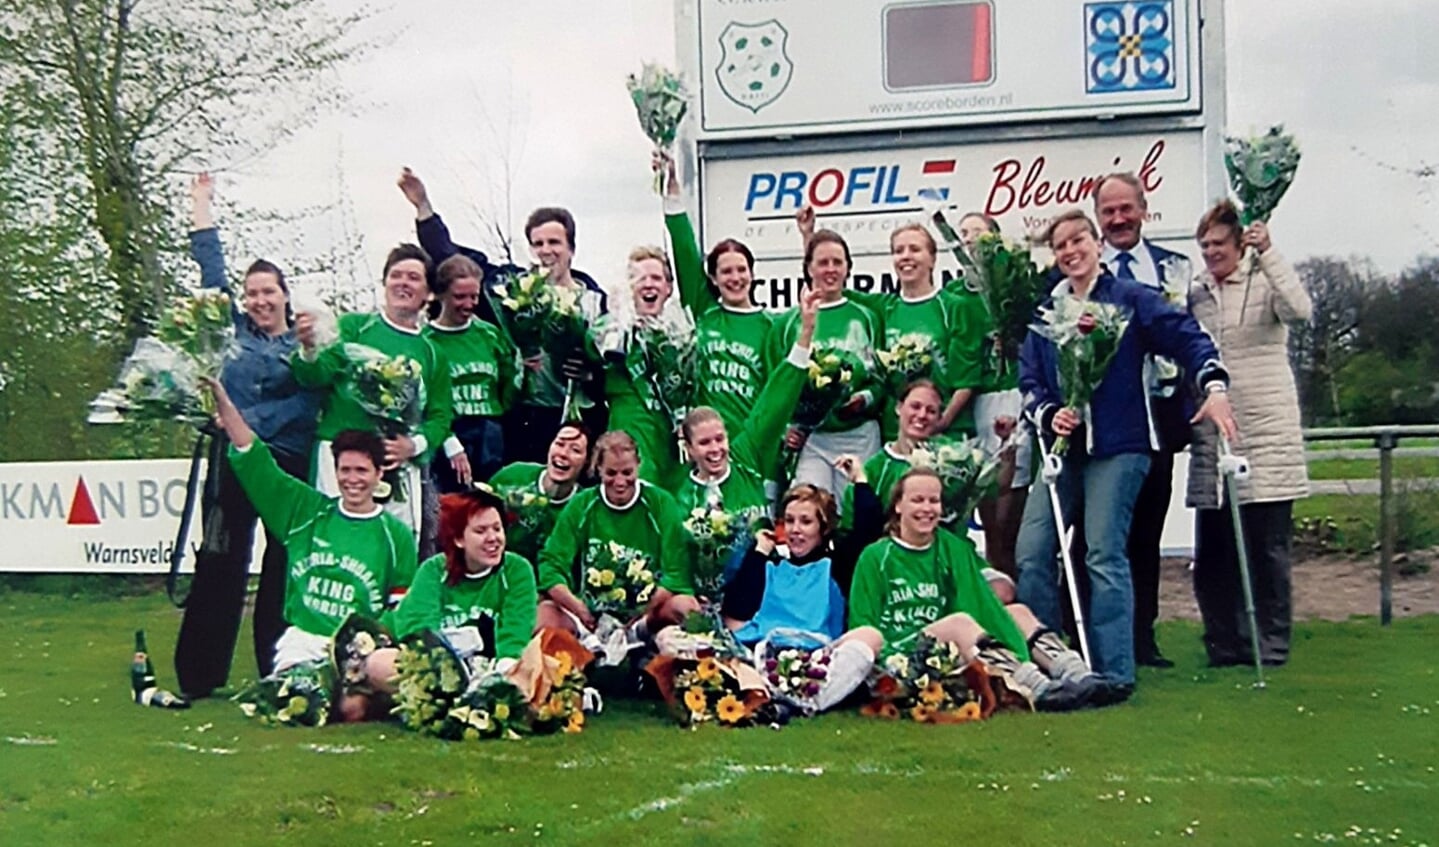 Het vrouwenteam van Ratti dat in 2004 kampioen werd met de geblesseerde Annemiek van Vleuten (op krukken) en Hanneke Nijenhuis (zittend links).